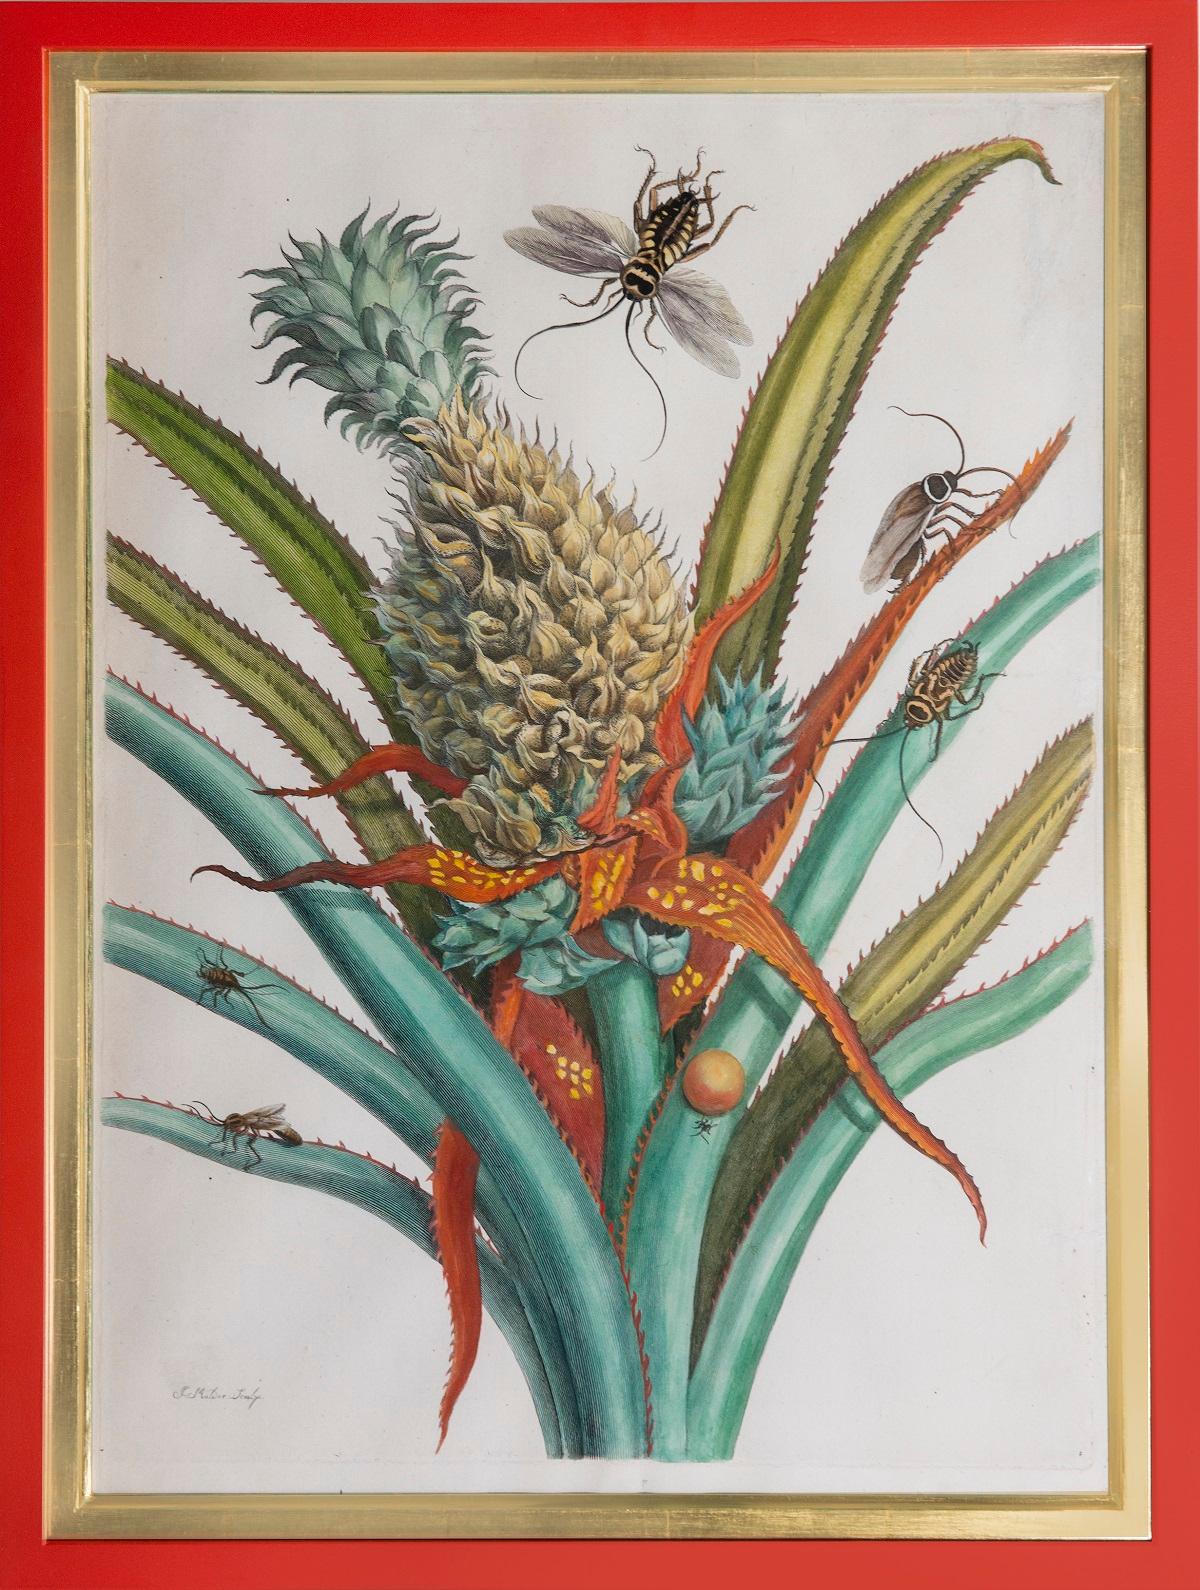 Maria Sybilla Merian Still-Life Print - Pineapple with foliage.  